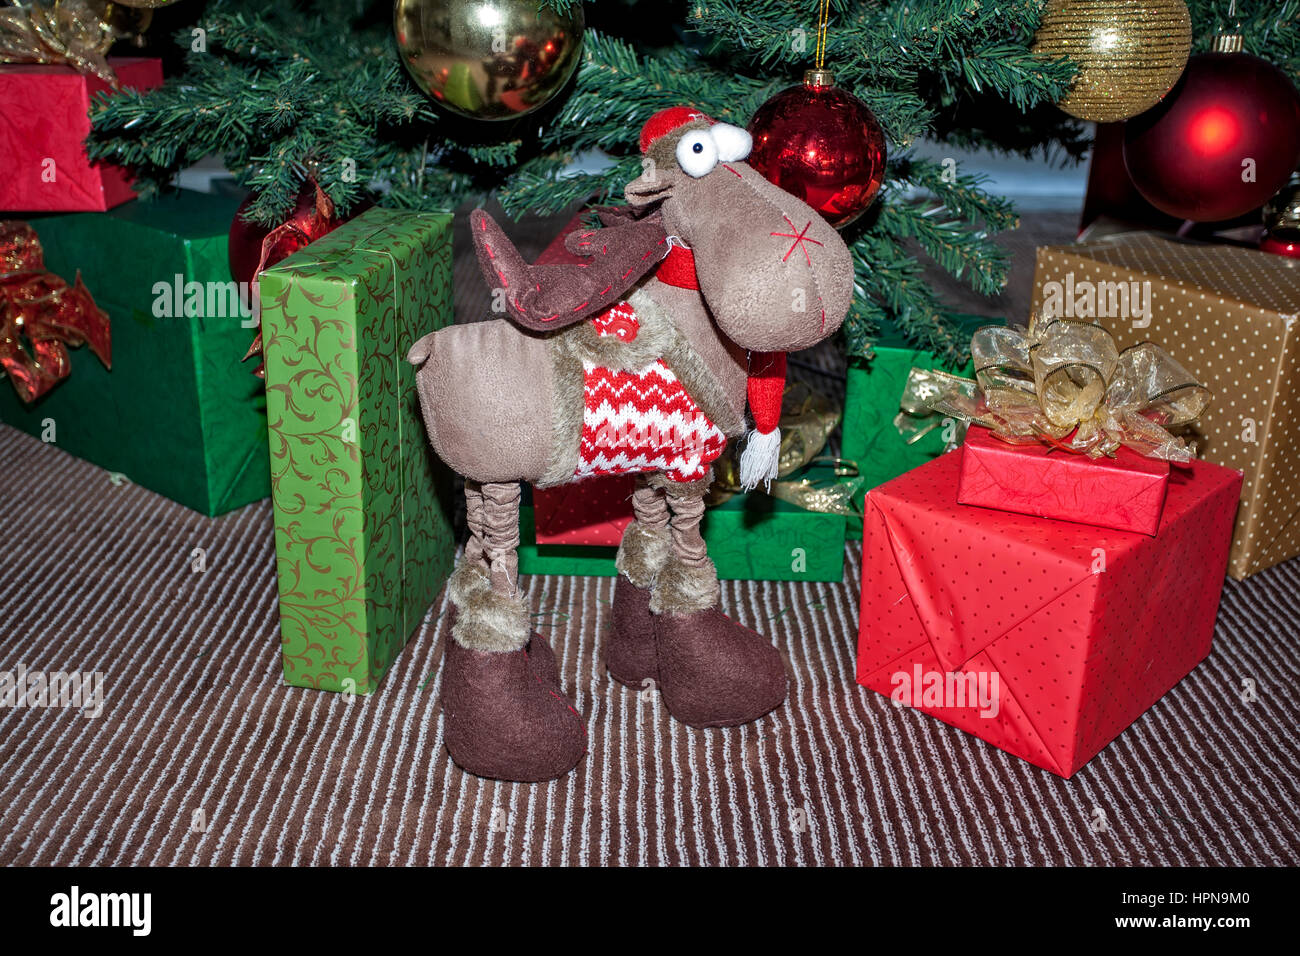 Weihnachten und Neujahr Dekorationen und Geschenkartikel Stockfoto